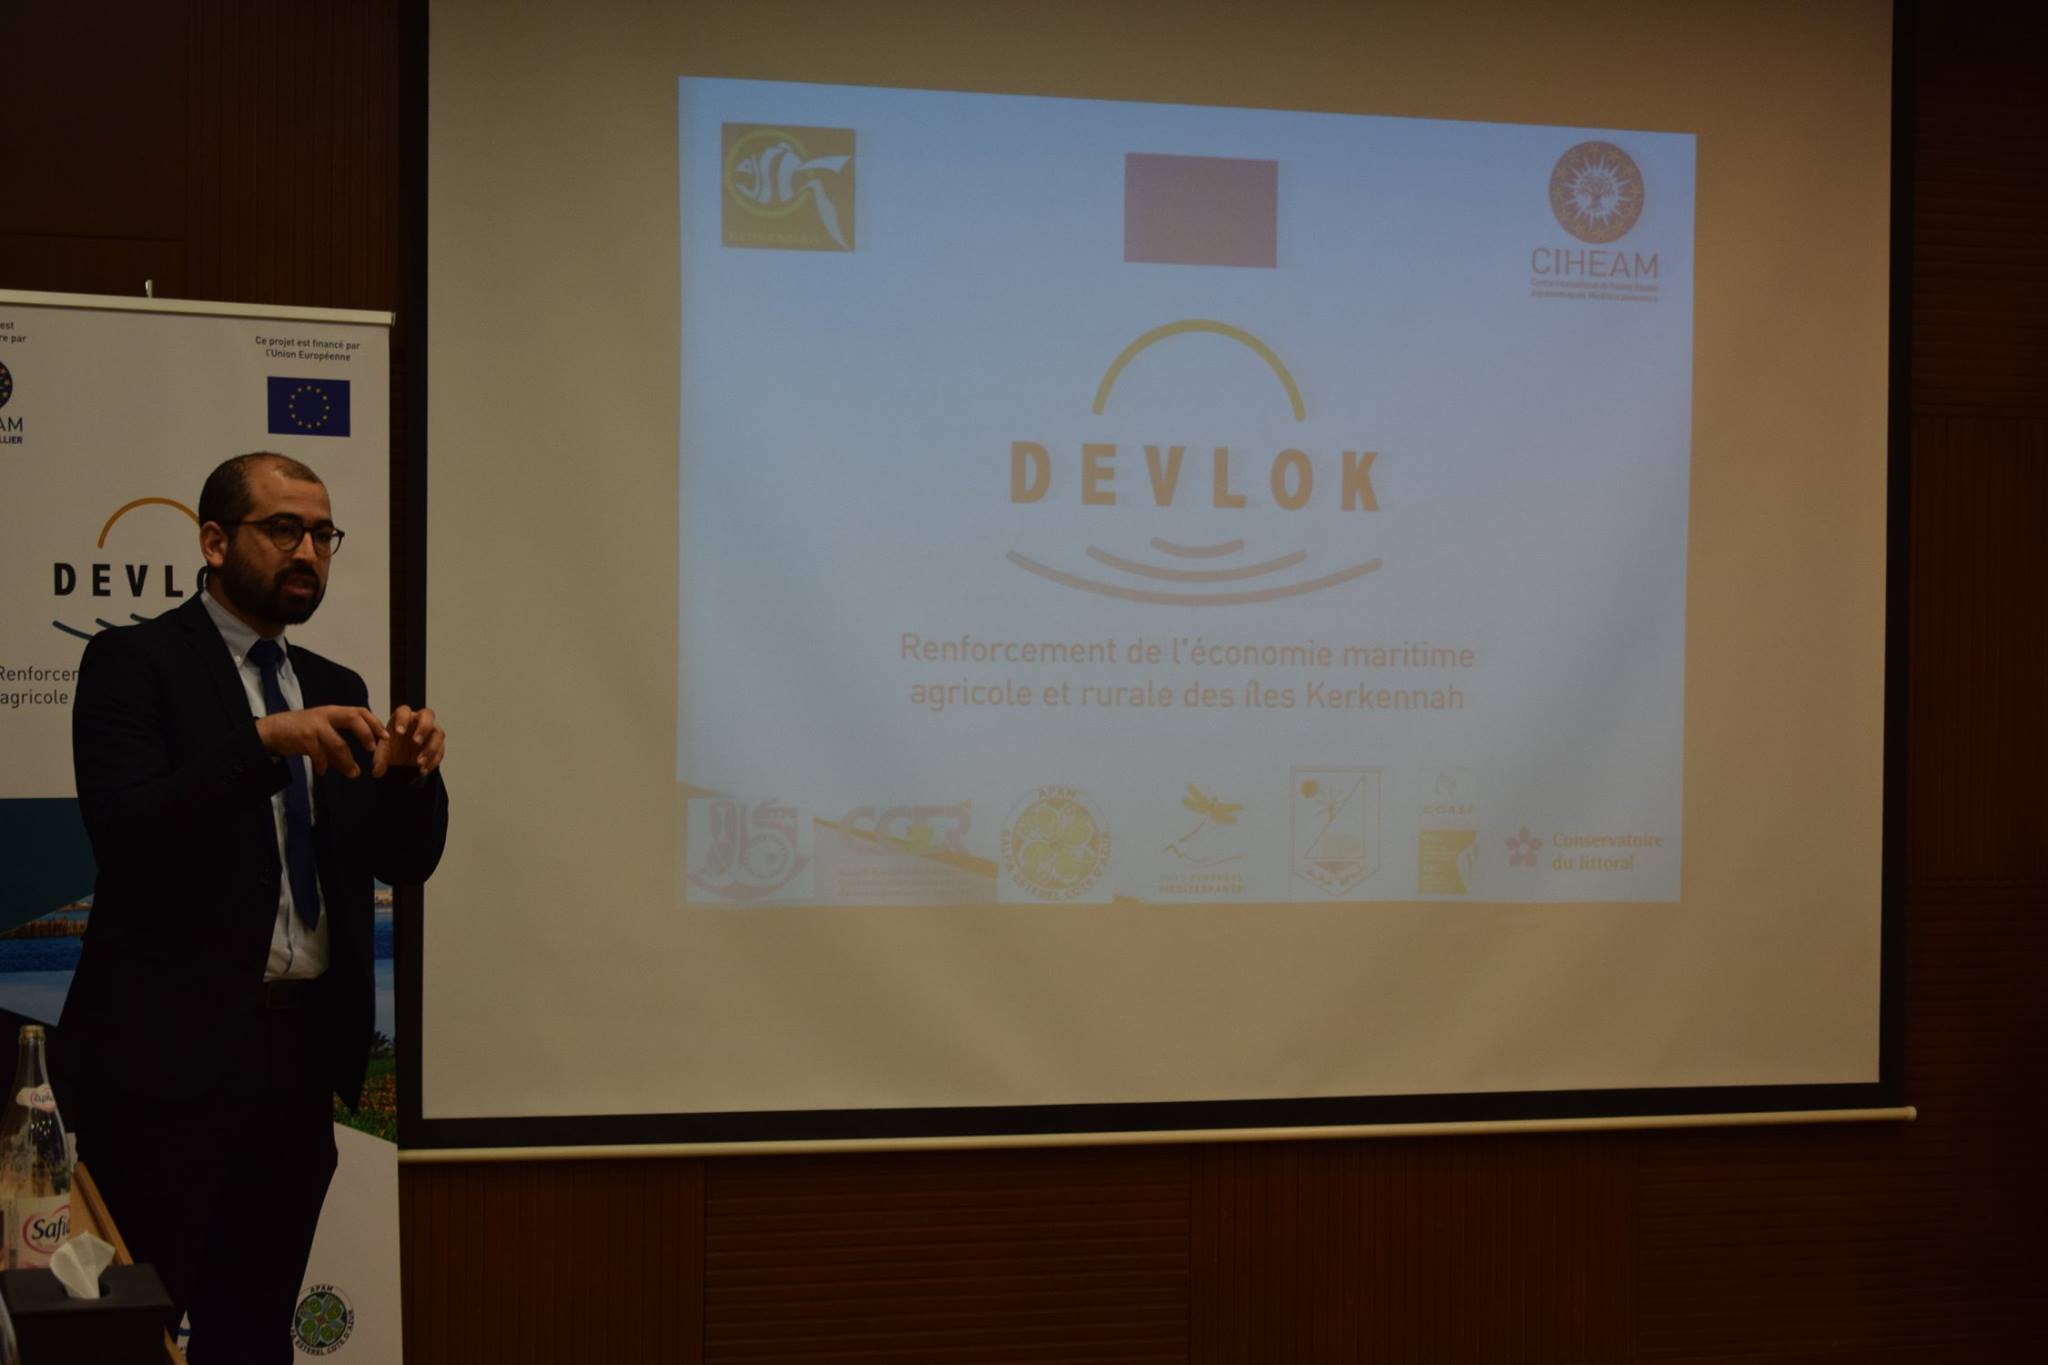 صفاقس : مشروع "Develok" لتعزيز الإقتصاد البحري والفلاحي والريفي بجزيرة قرقنة